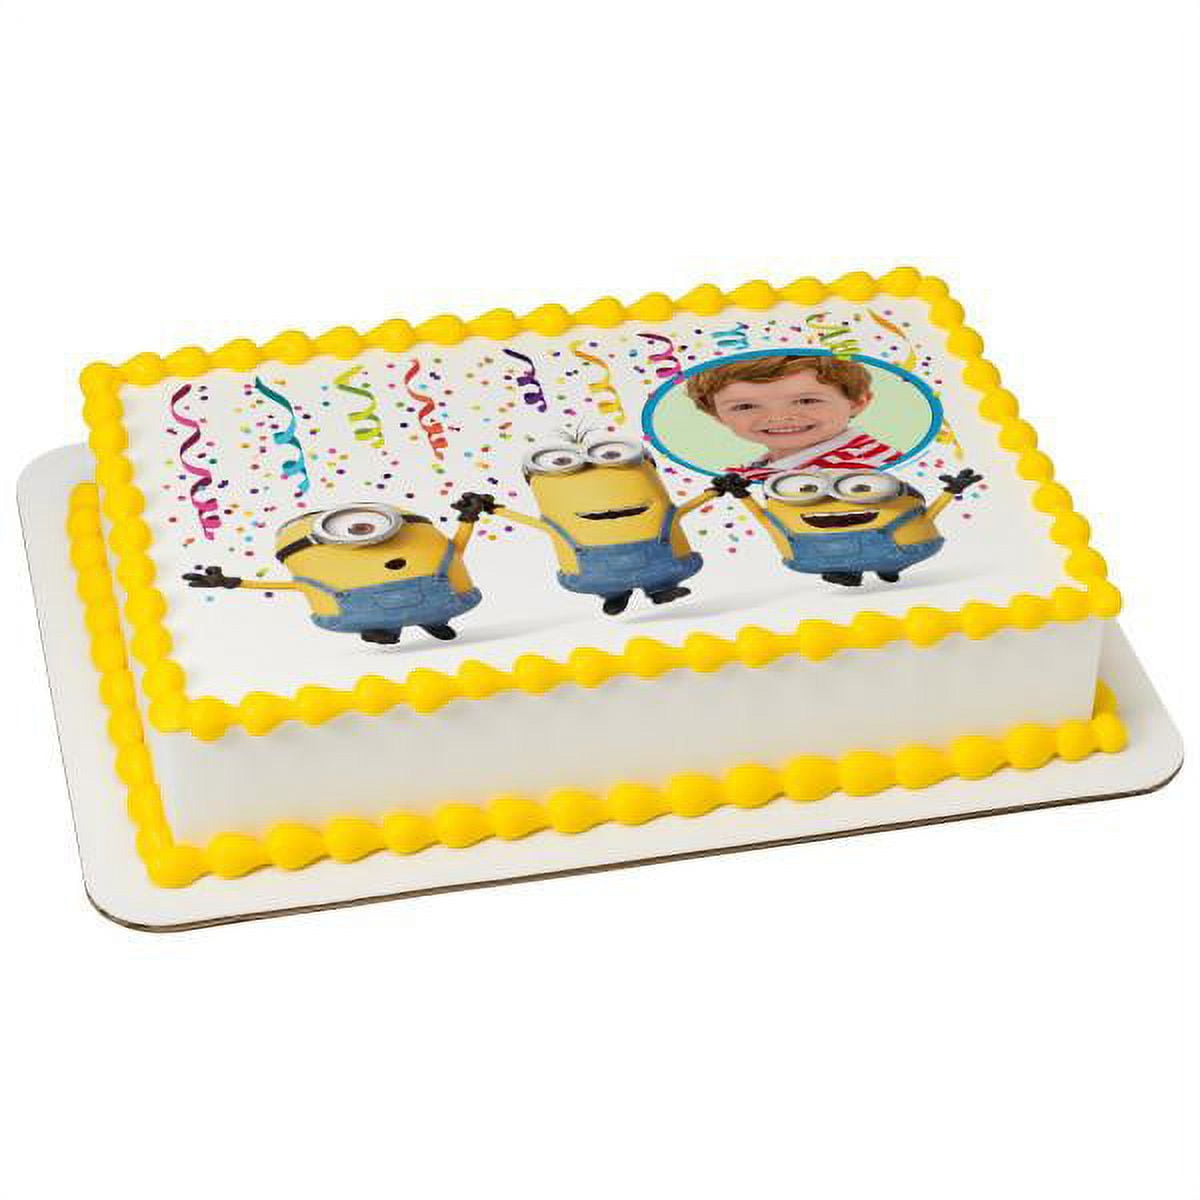 Minion Sheet Cake - BettyCrocker.com